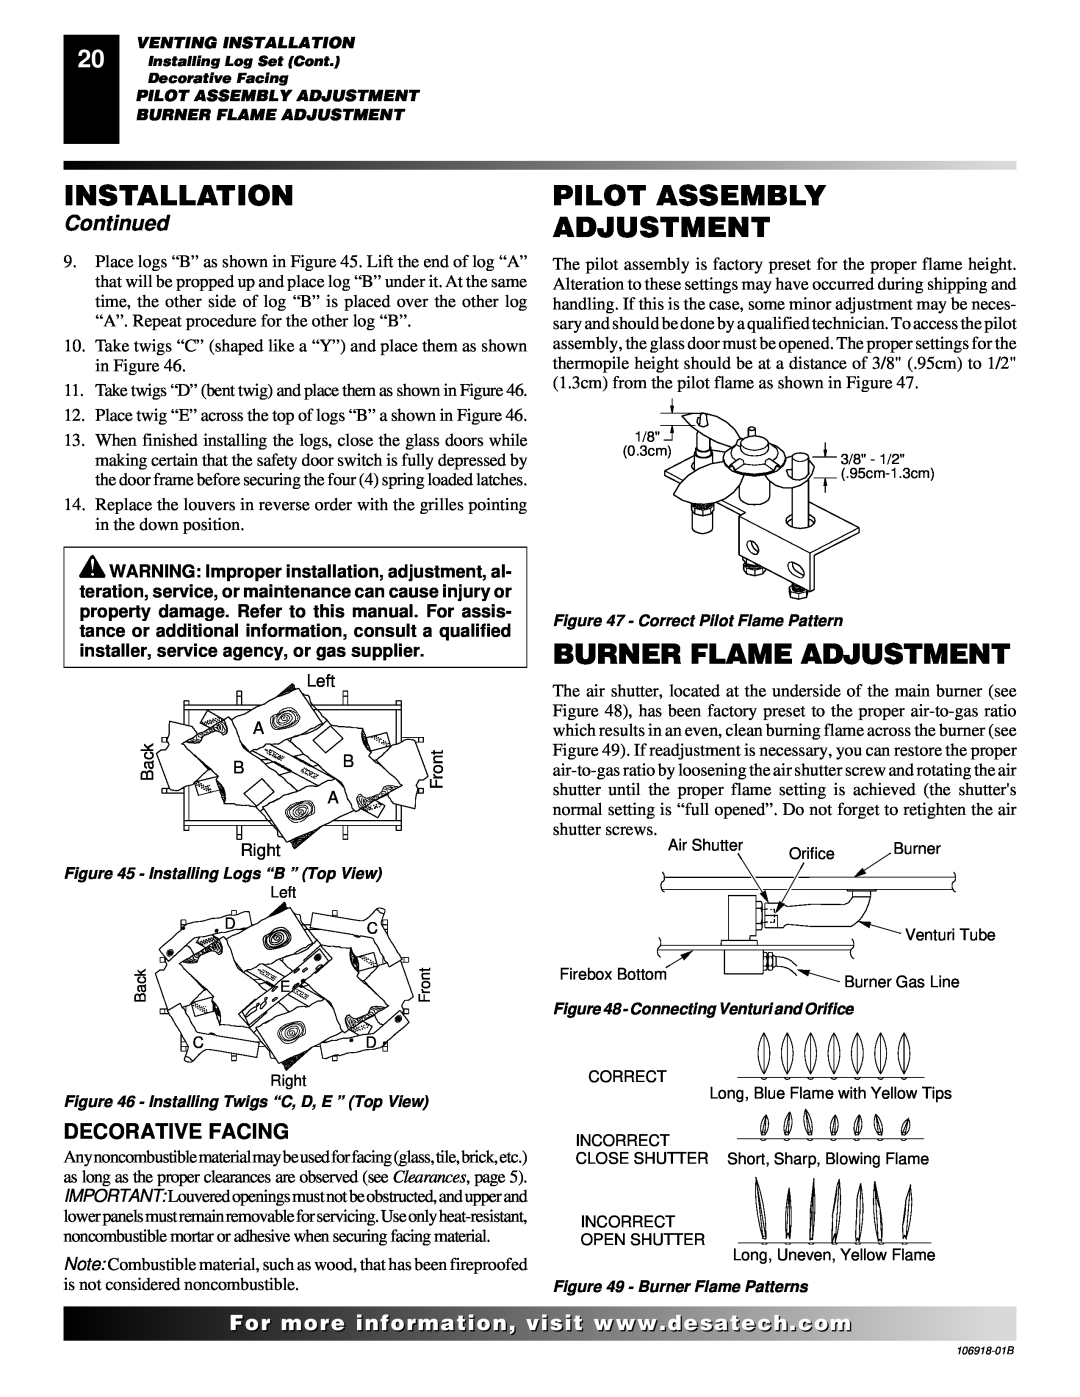 Desa VDDVF36PN/PP Pilot Assembly Adjustment, Burner Flame Adjustment, Decorative Facing, Installation, Continued 